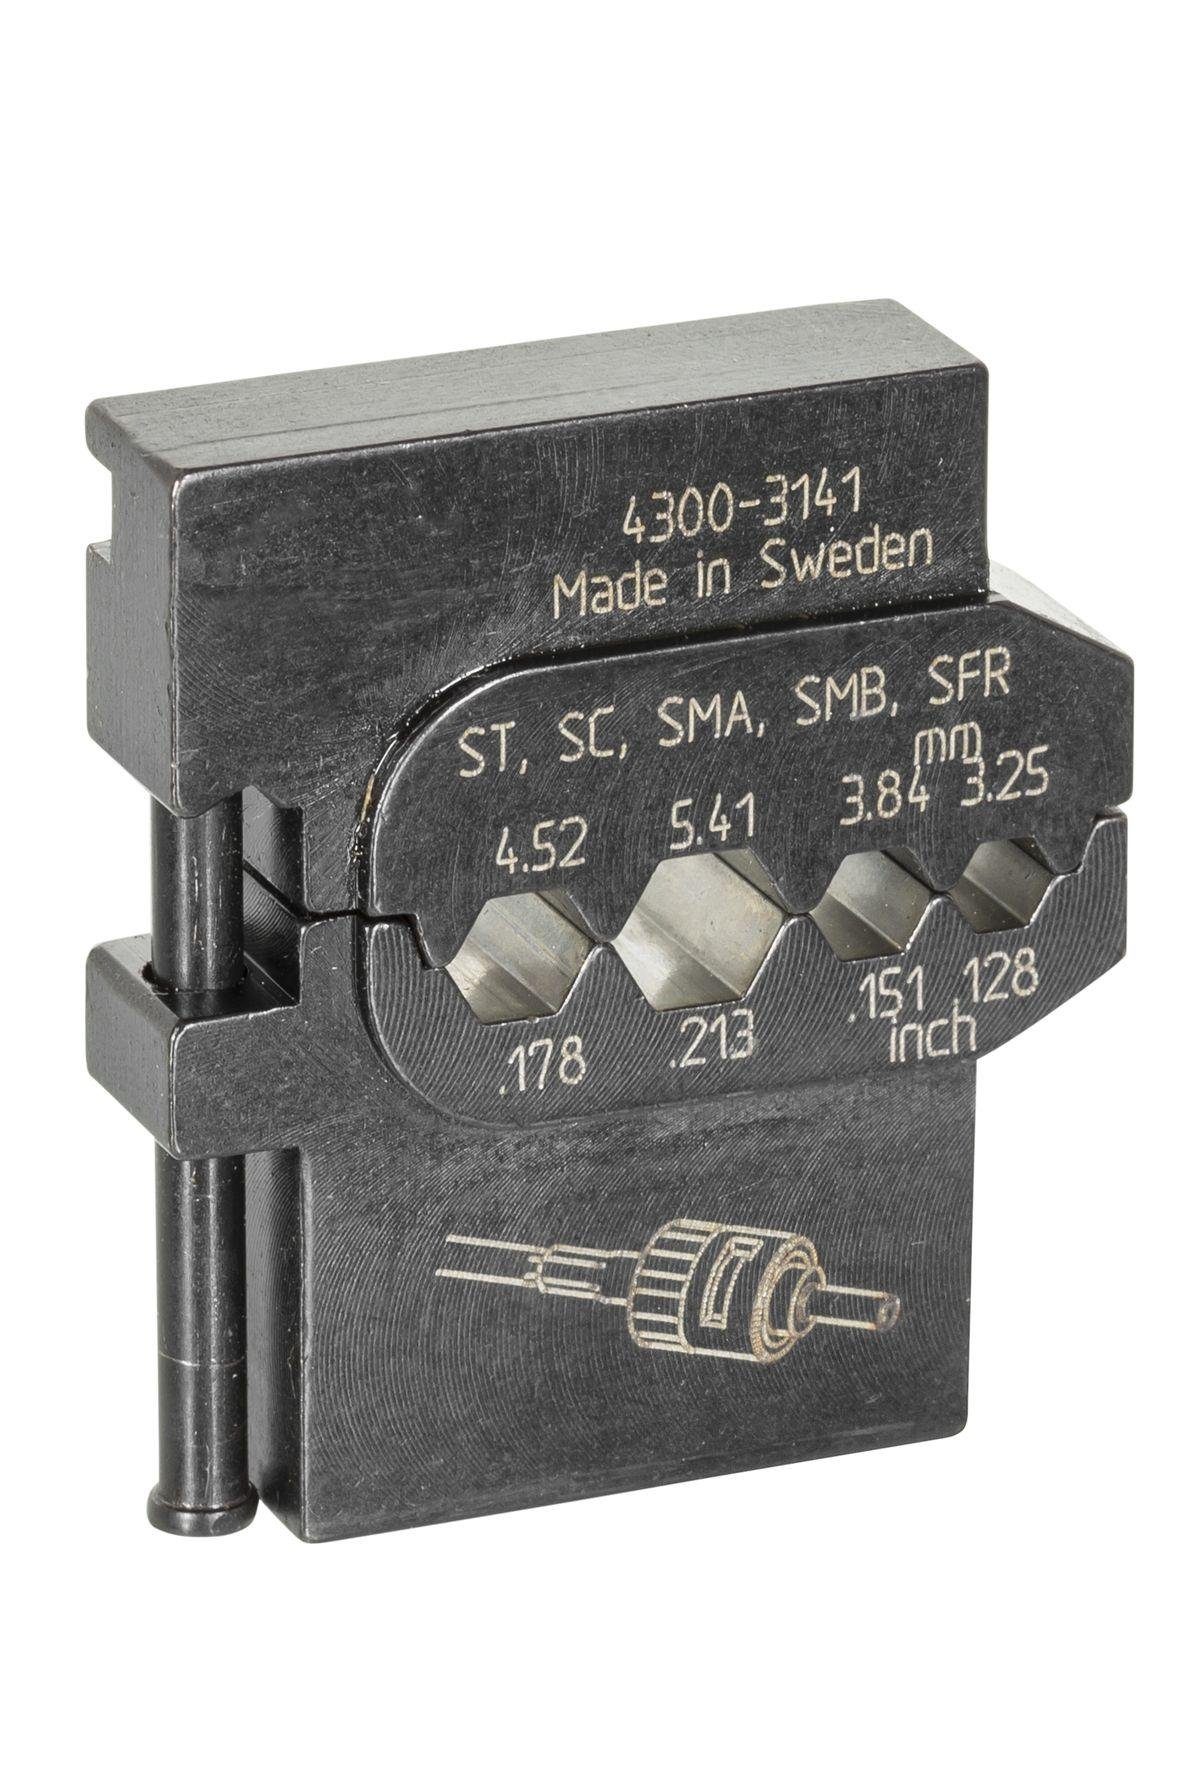 Gedore Crimpzange 8140-12 Modul-Einsatz Lichtwellenleiter für